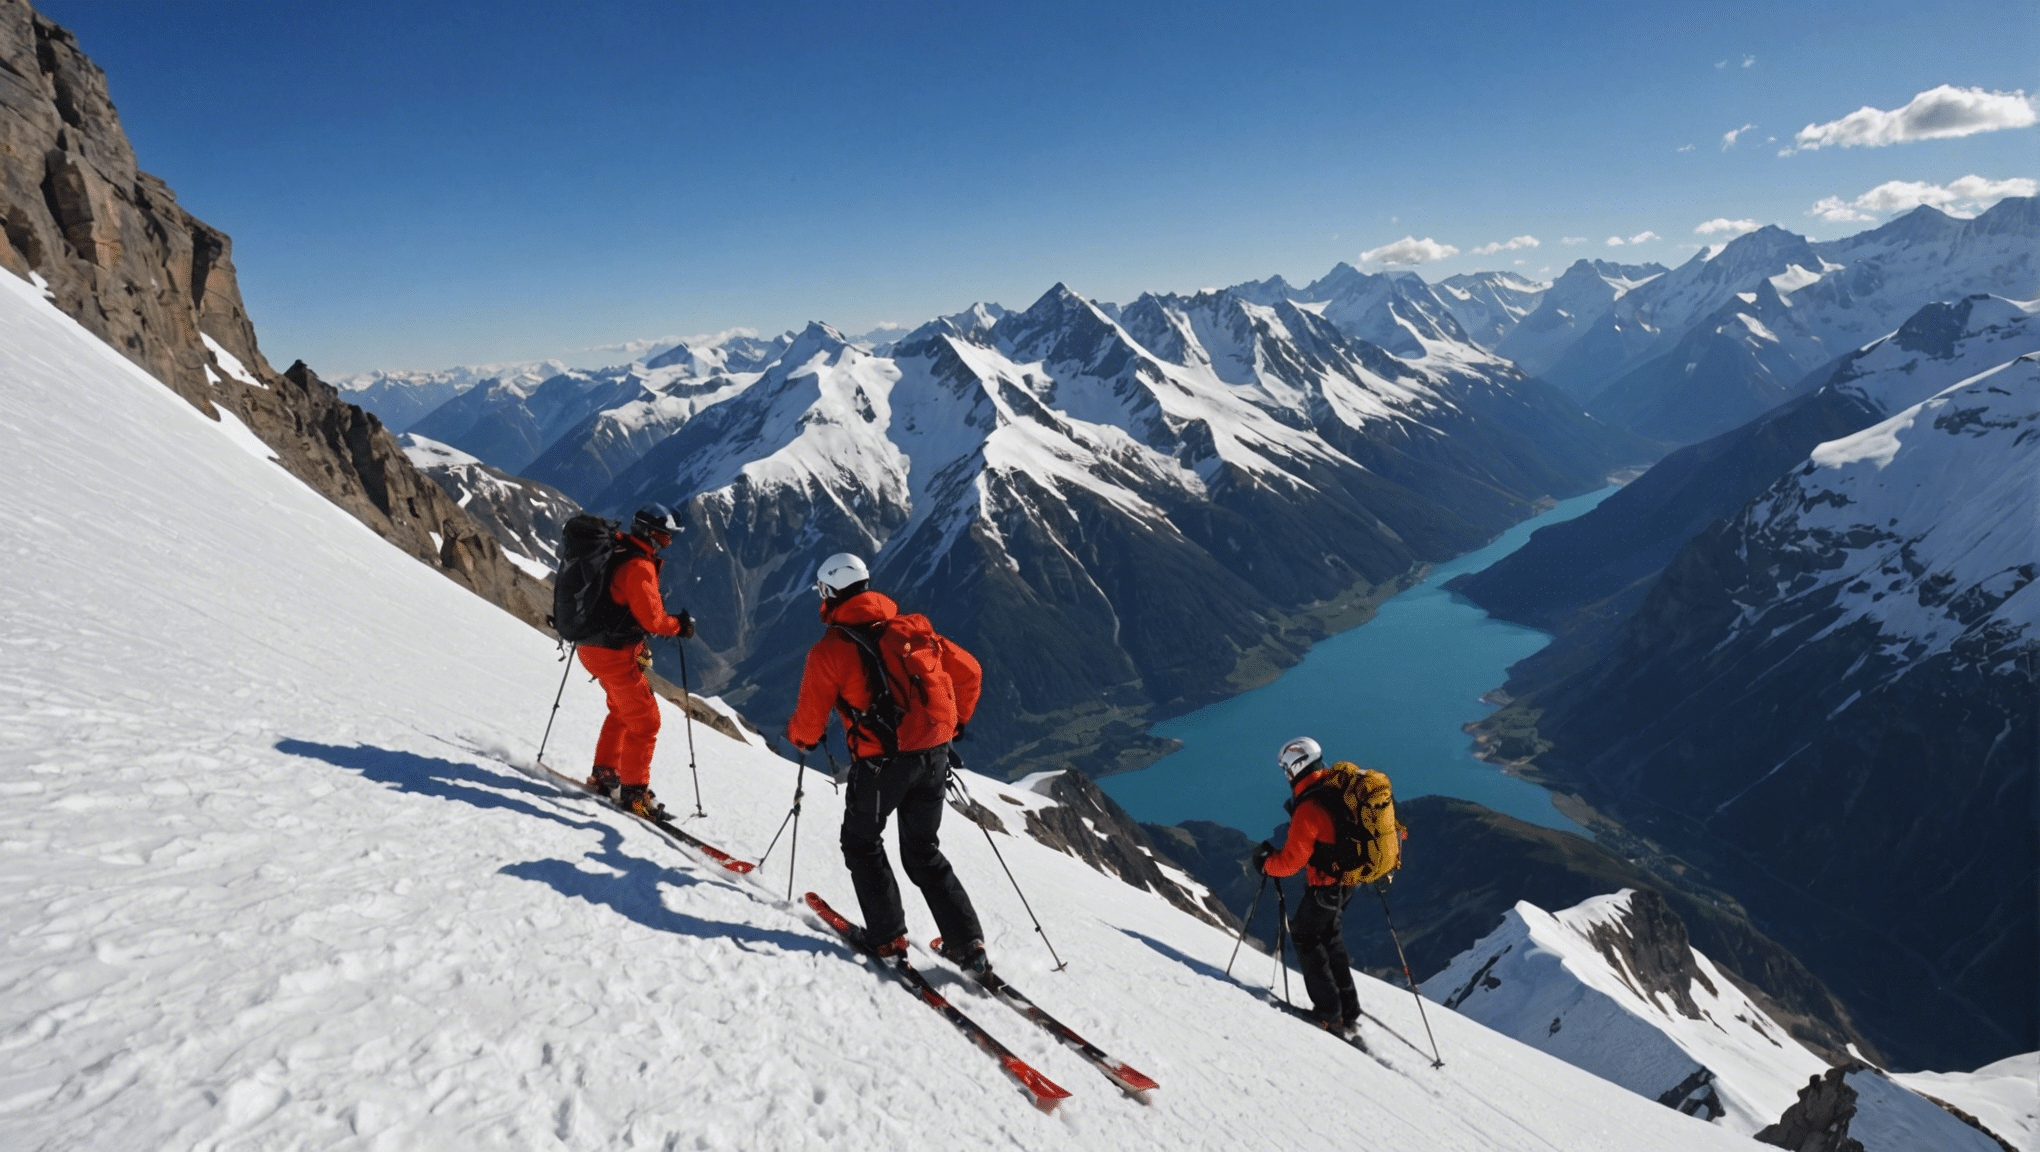 découvrez les plaisirs et les défis uniques d'une expédition en altitude à travers notre guide complet sur les joies et les défis d'une aventure en haute montagne.